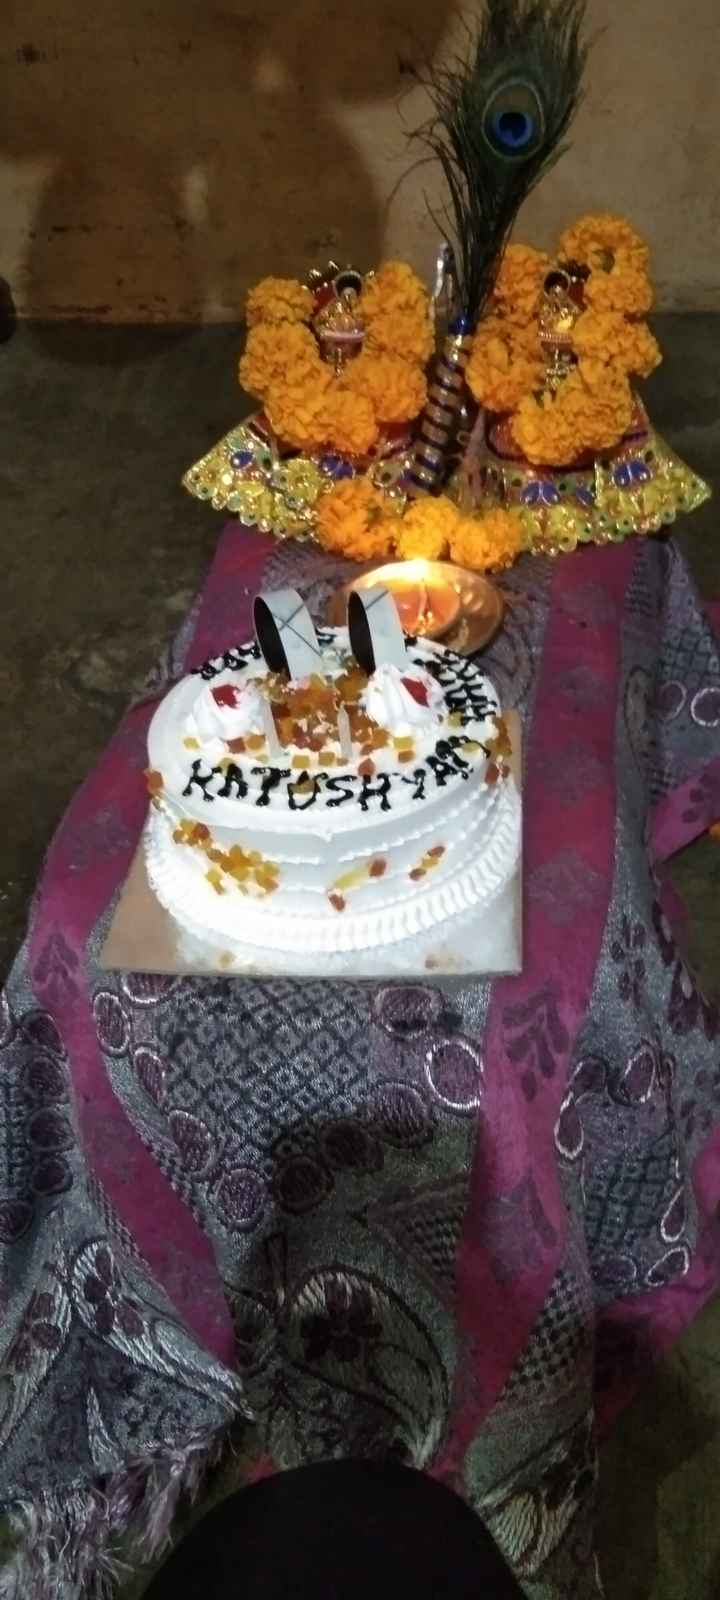 Prabhas cuts birthday cake on the sets of 'Radhe Shyam' - view pics